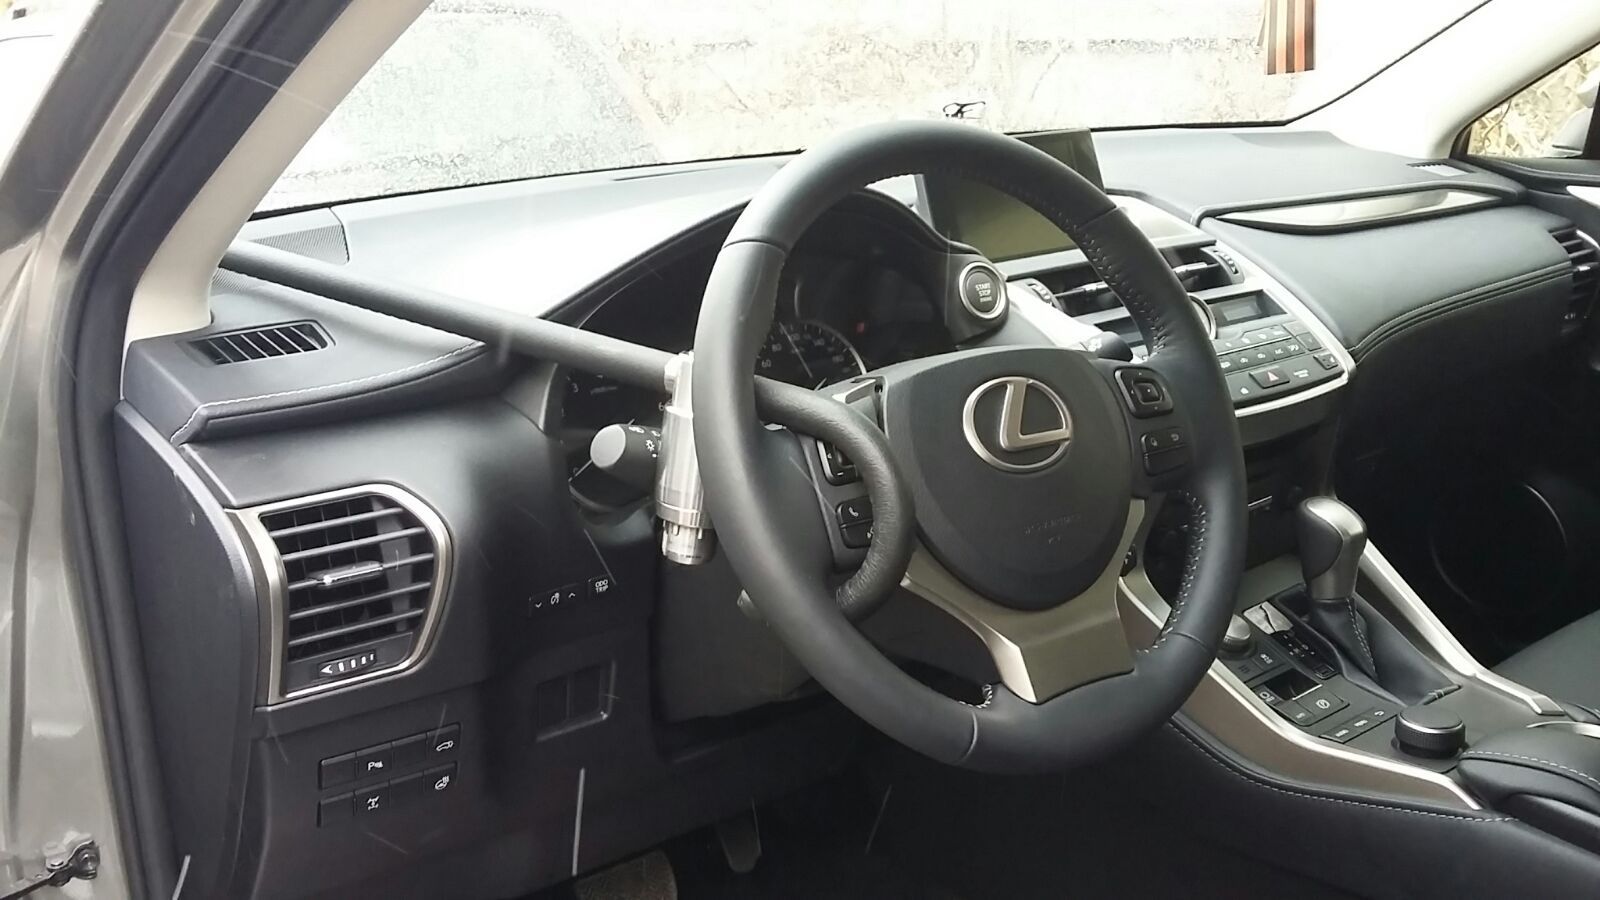 Блокиратор руля Питон установленный на автомобиле Lexus NX200 2014-